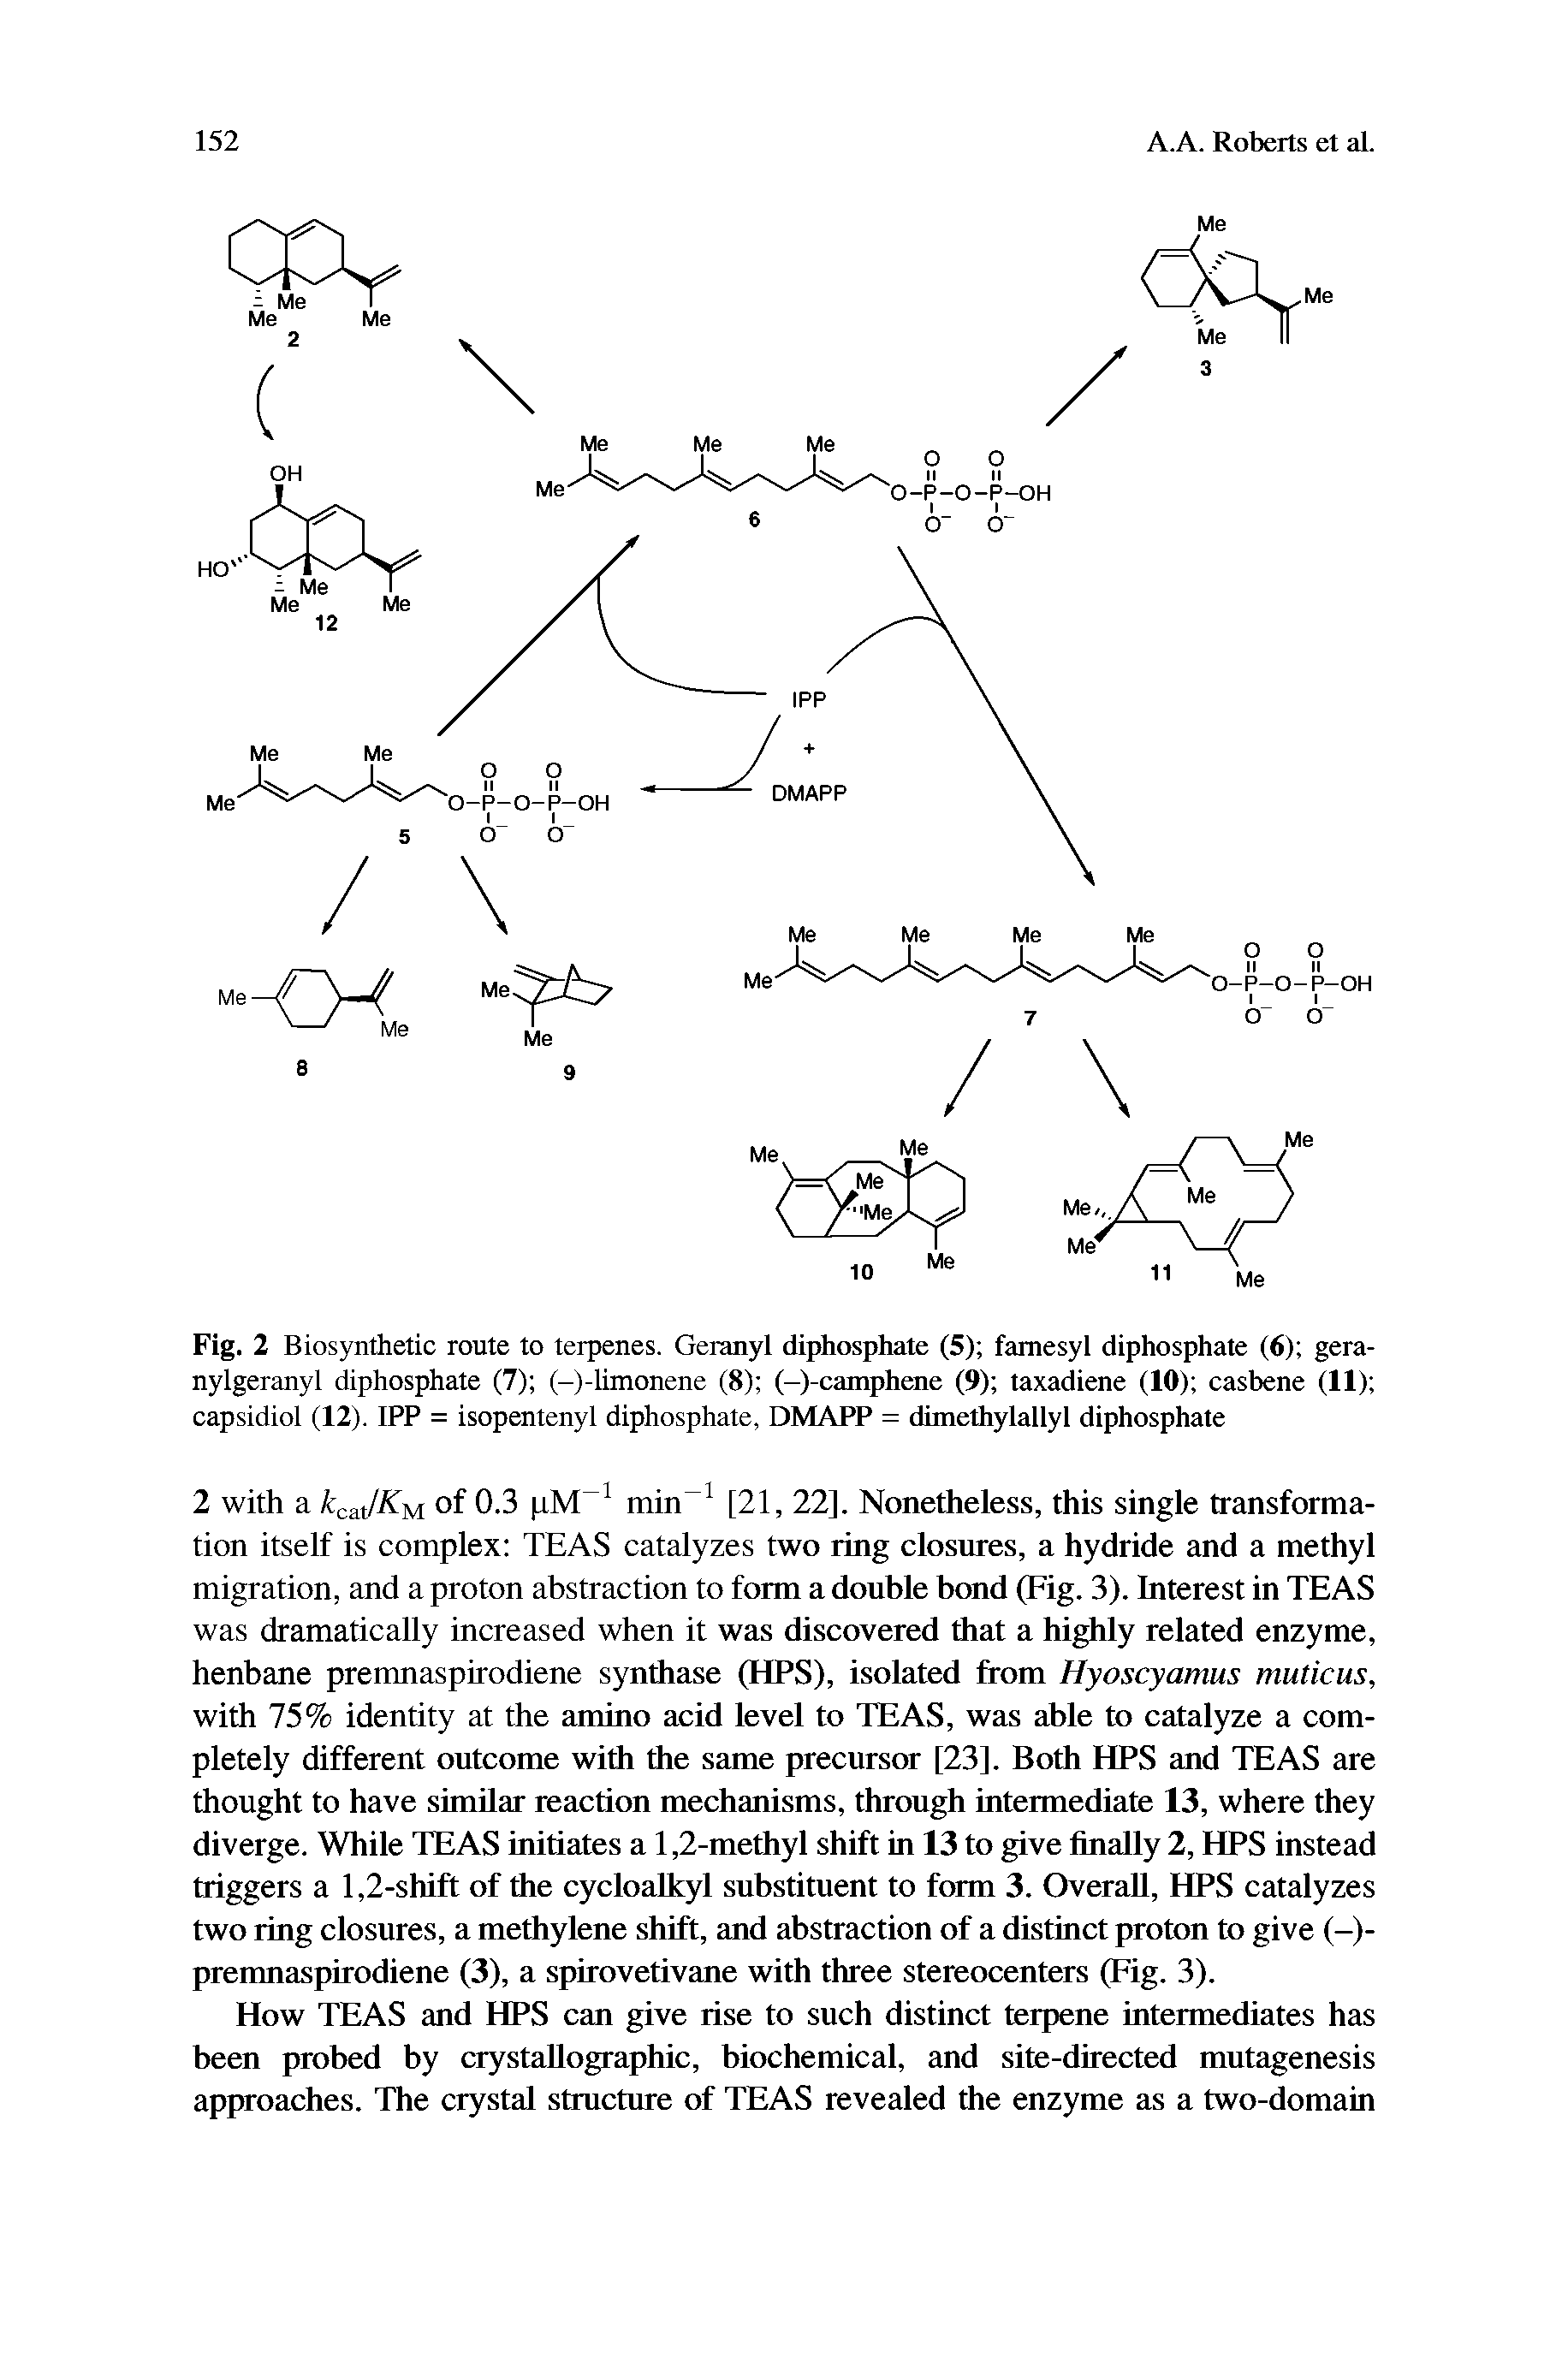 Fig. 2 Biosynthetic route to terpenes. Geranyl diphosphate (5) famesyl diphosphate (6) gera-nylgeranyl diphosphate (7) (-)-limonene (8) (-)-camphene (9) taxadiene (10) casbene (II) capsidiol (12). IPP = isopentenyl diphosphate, DMAPP = dimethylallyl diphosphate...